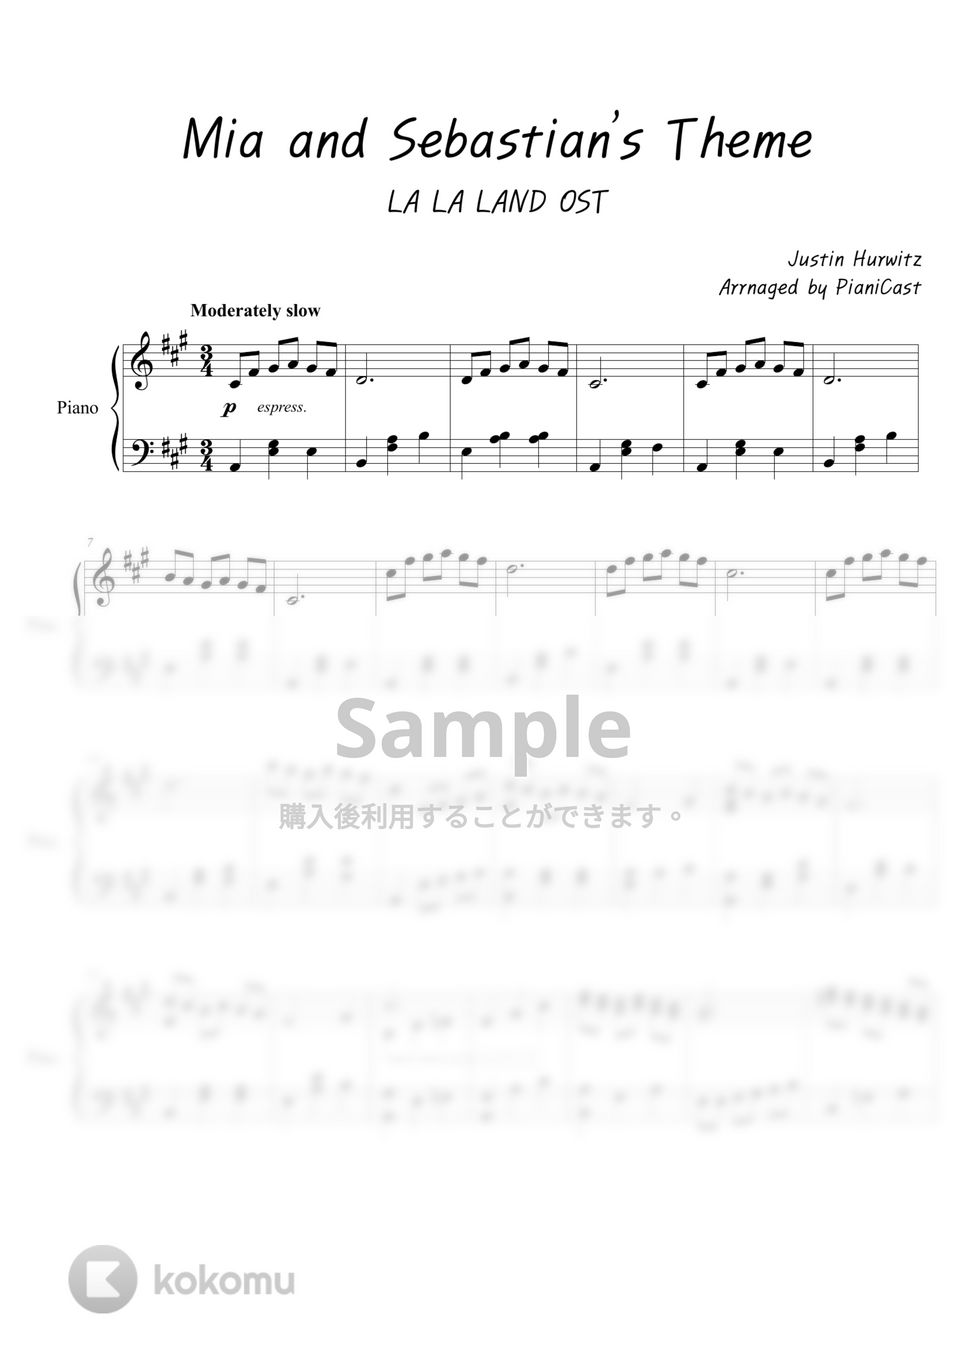 LALALAND - Mia & Sebastian’s Theme by Pianicast